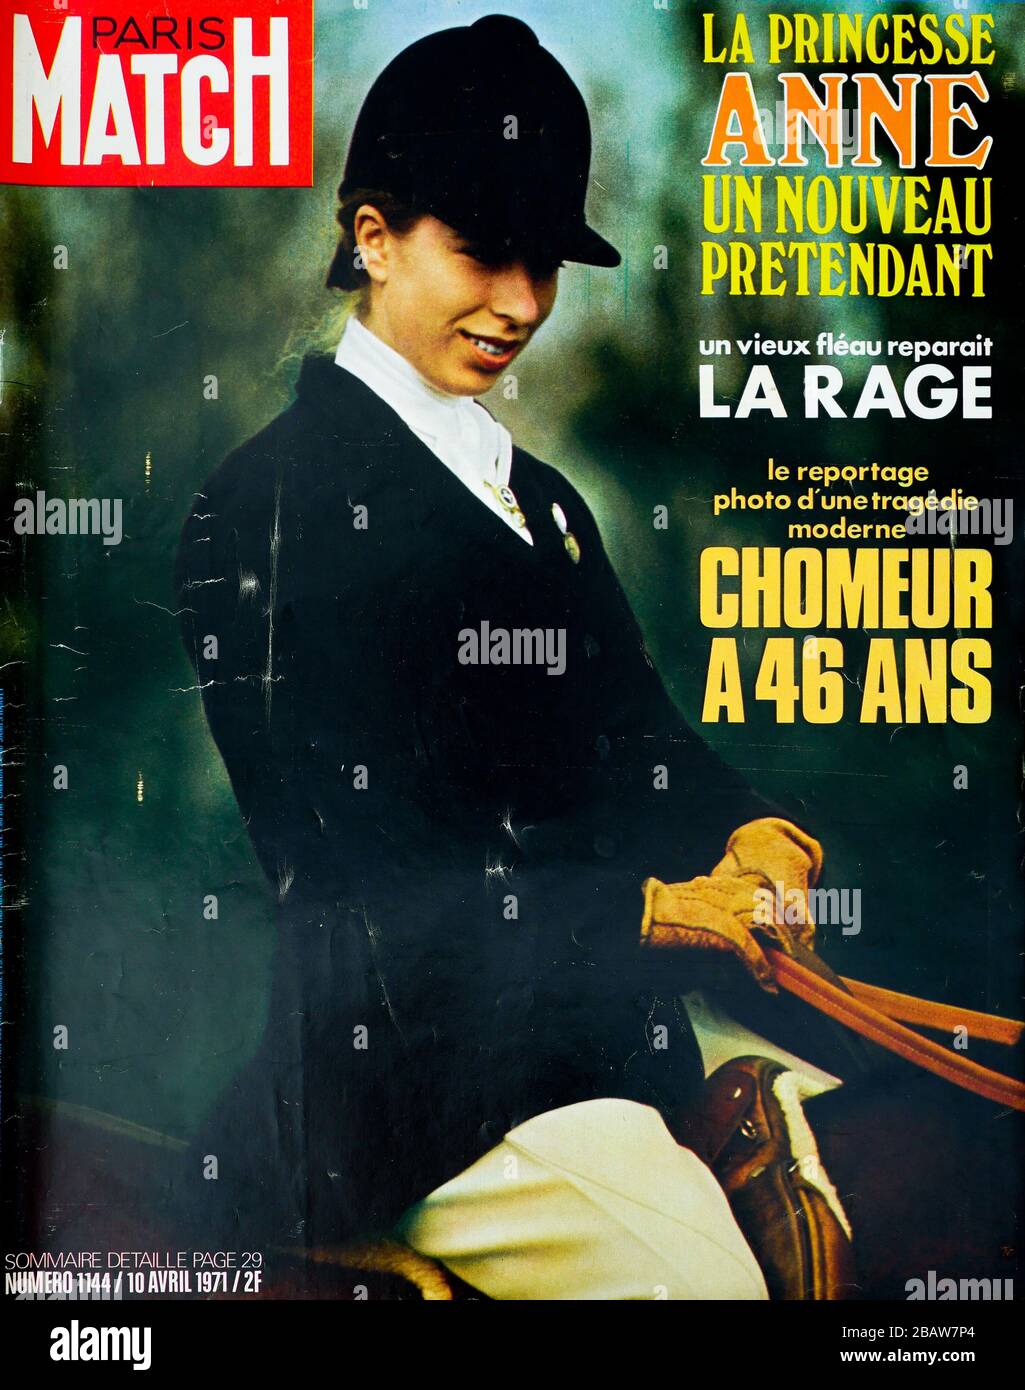 FrontPage della rivista francese Paris-Match, n° 1144, il nuovo pretendente della principessa Ann d'Inghilterra, 1973, Francia Foto Stock